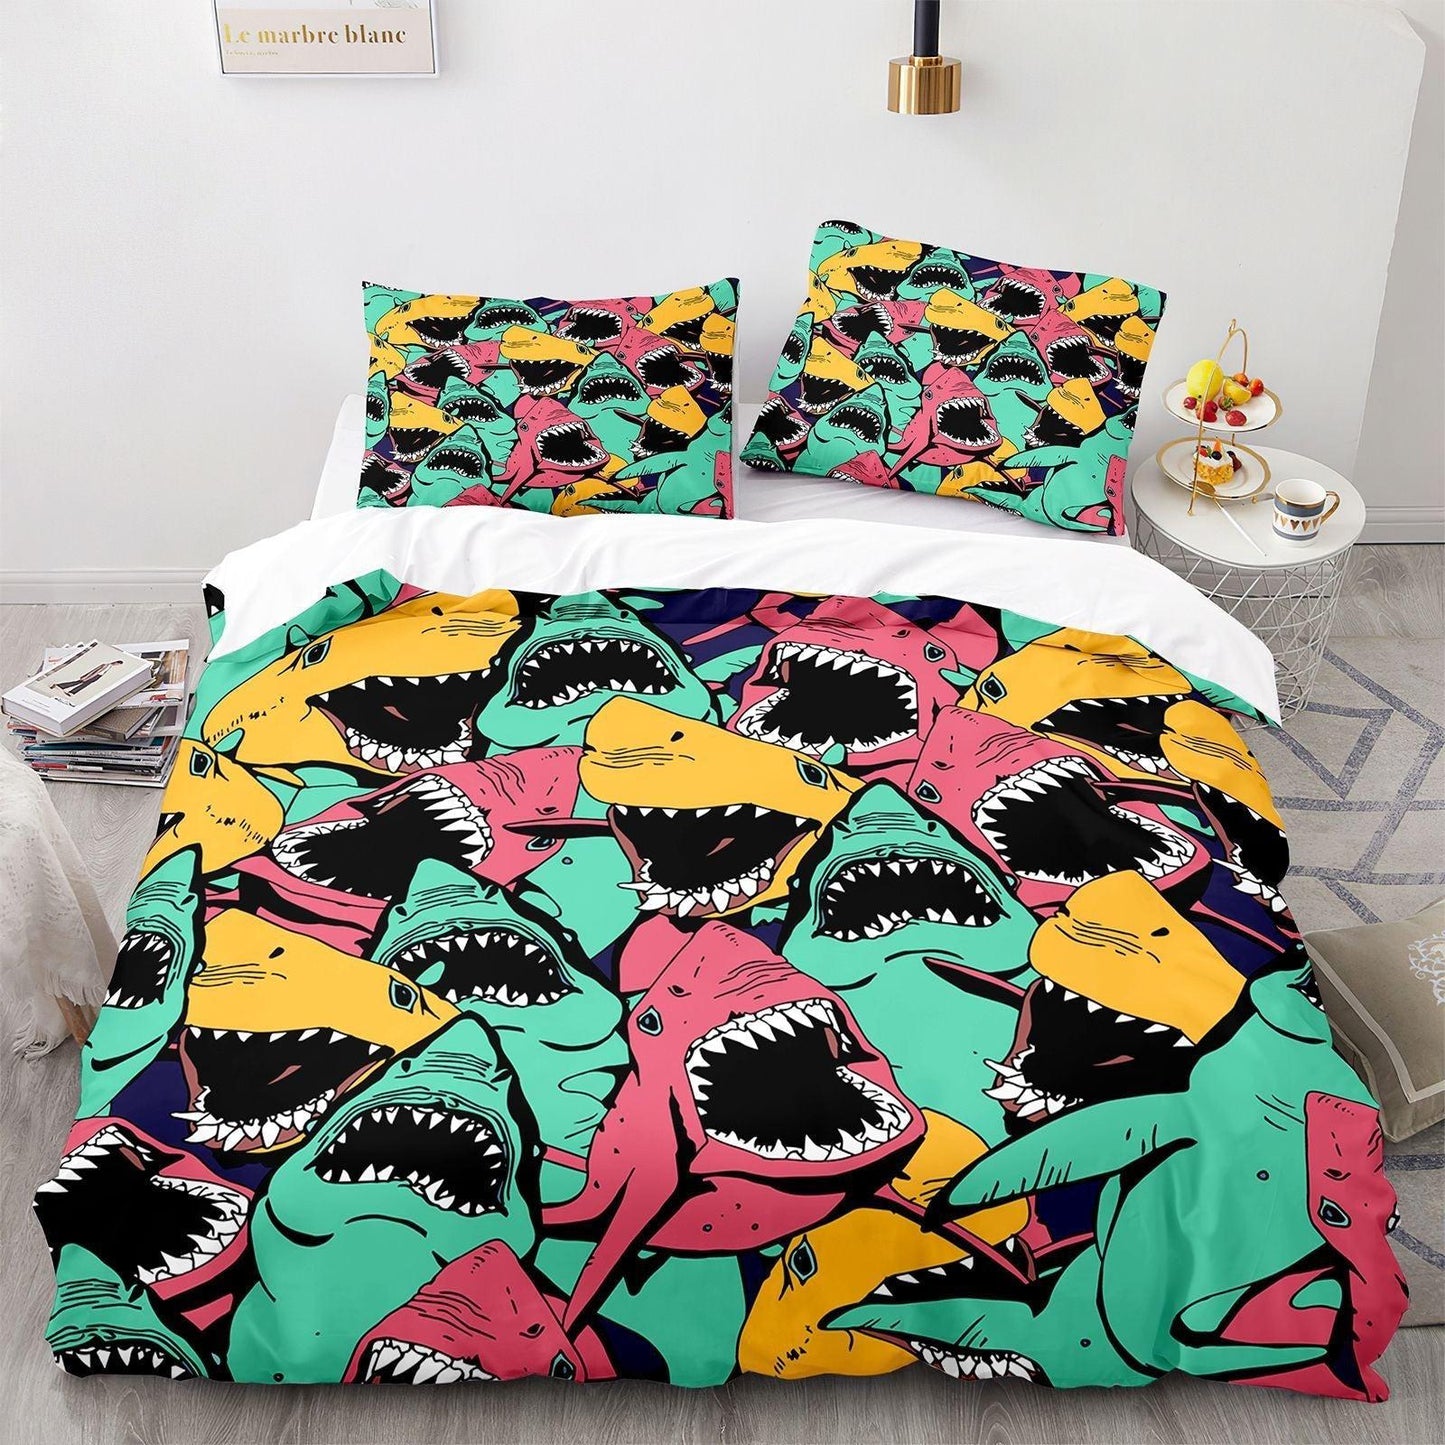 Multicolored shark duvet cover